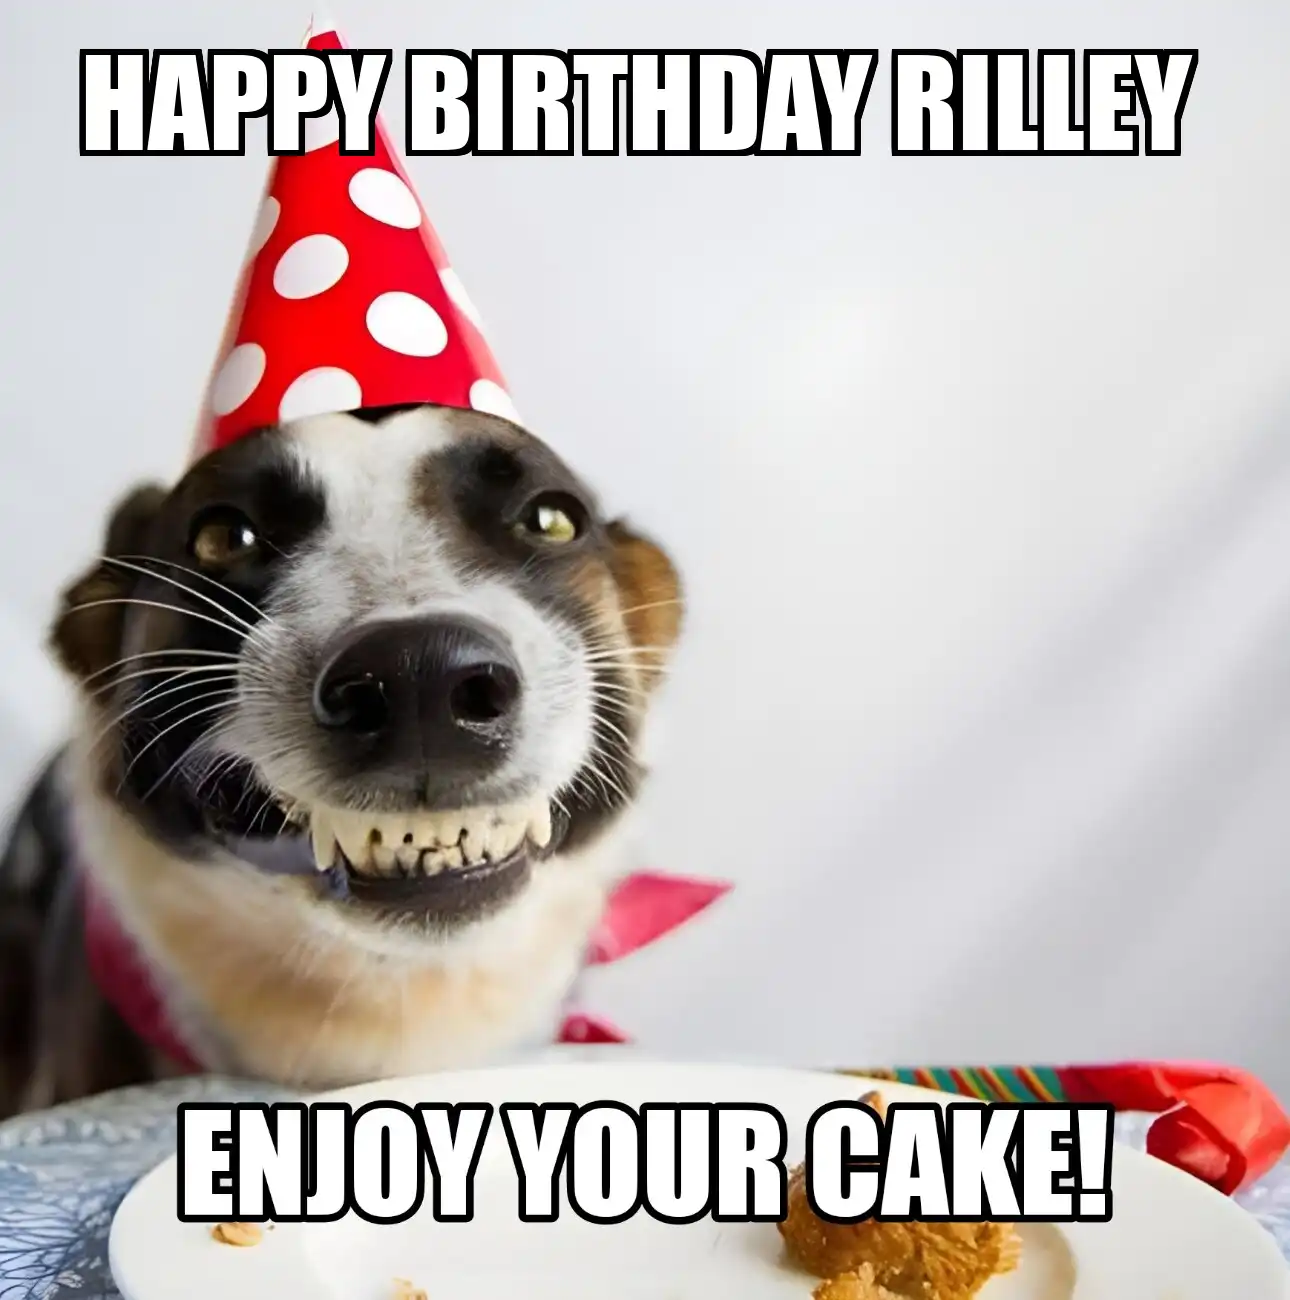 Happy Birthday Rilley Enjoy Your Cake Dog Meme